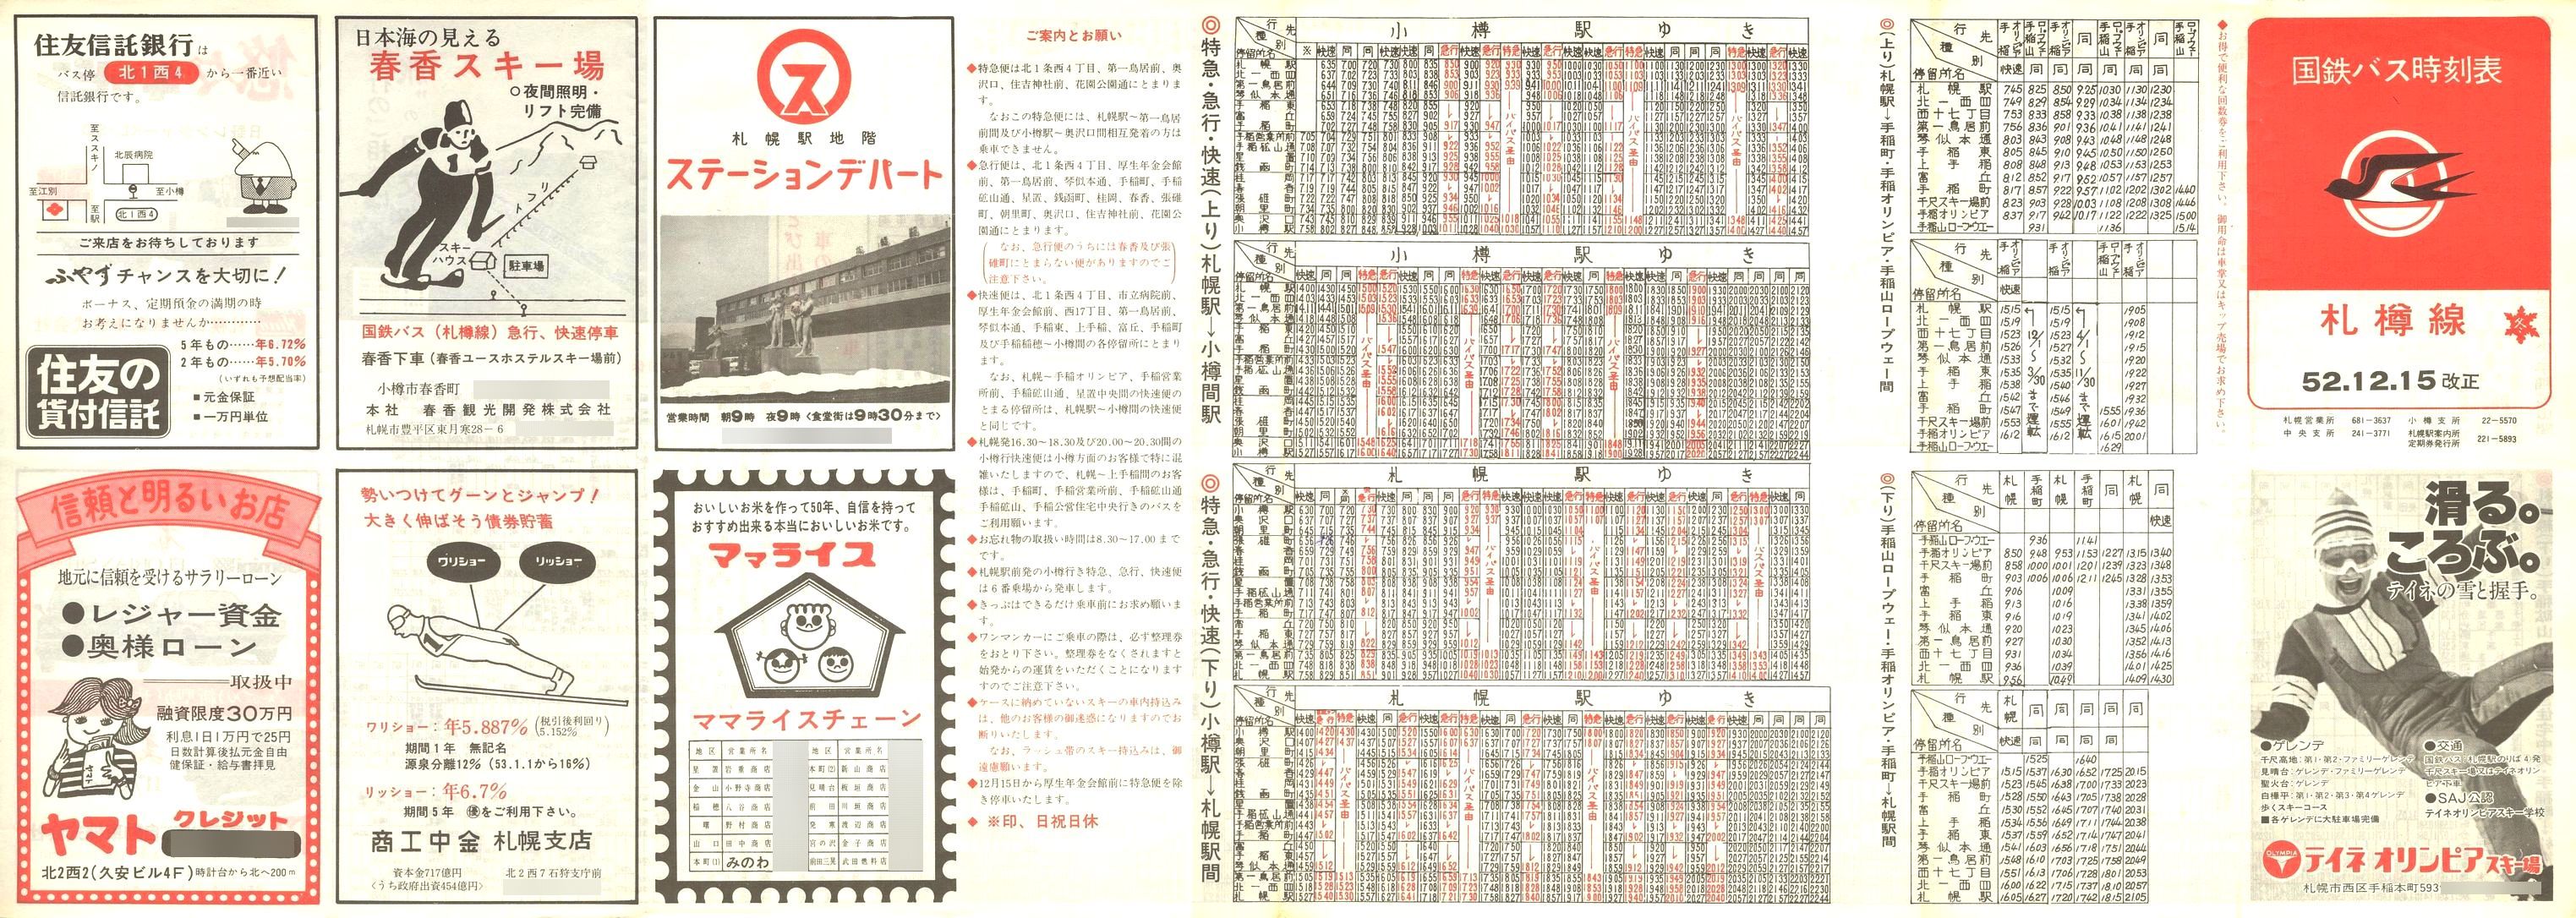 1977-12-15改正_国鉄バス_札樽線時刻表表面